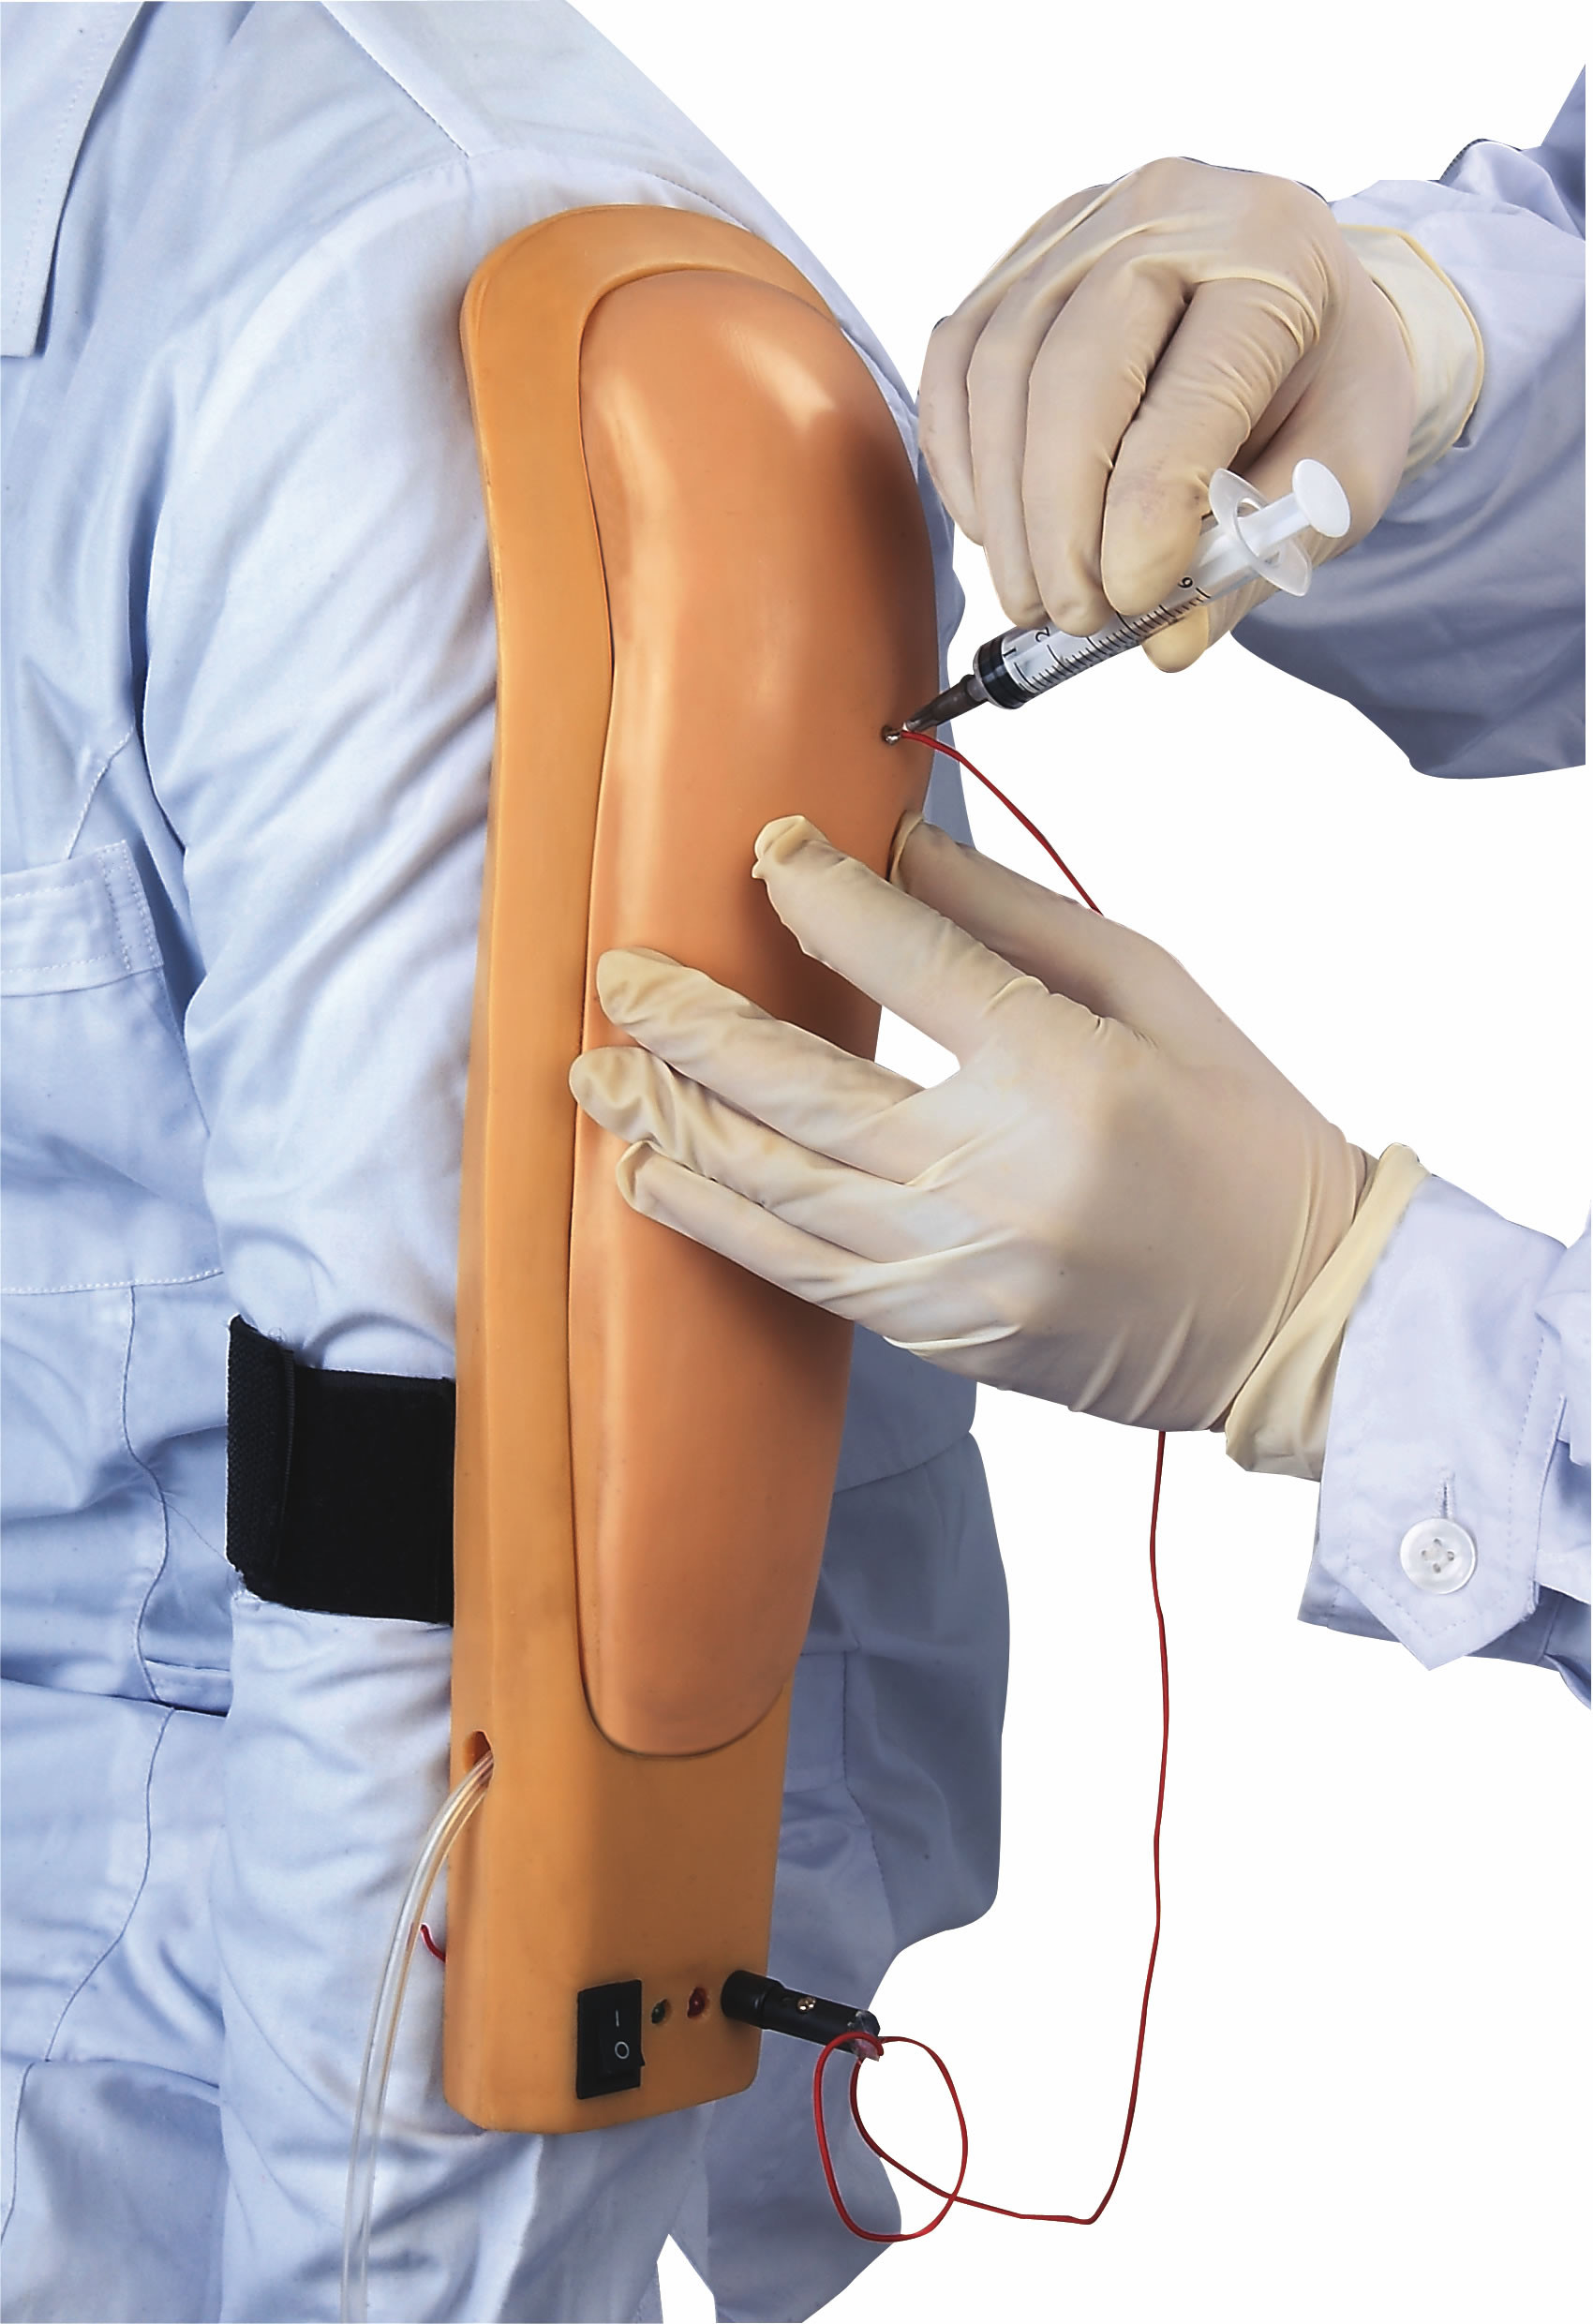 Parte superior usable del simulador de la inyección intramuscular - arme con color de piel